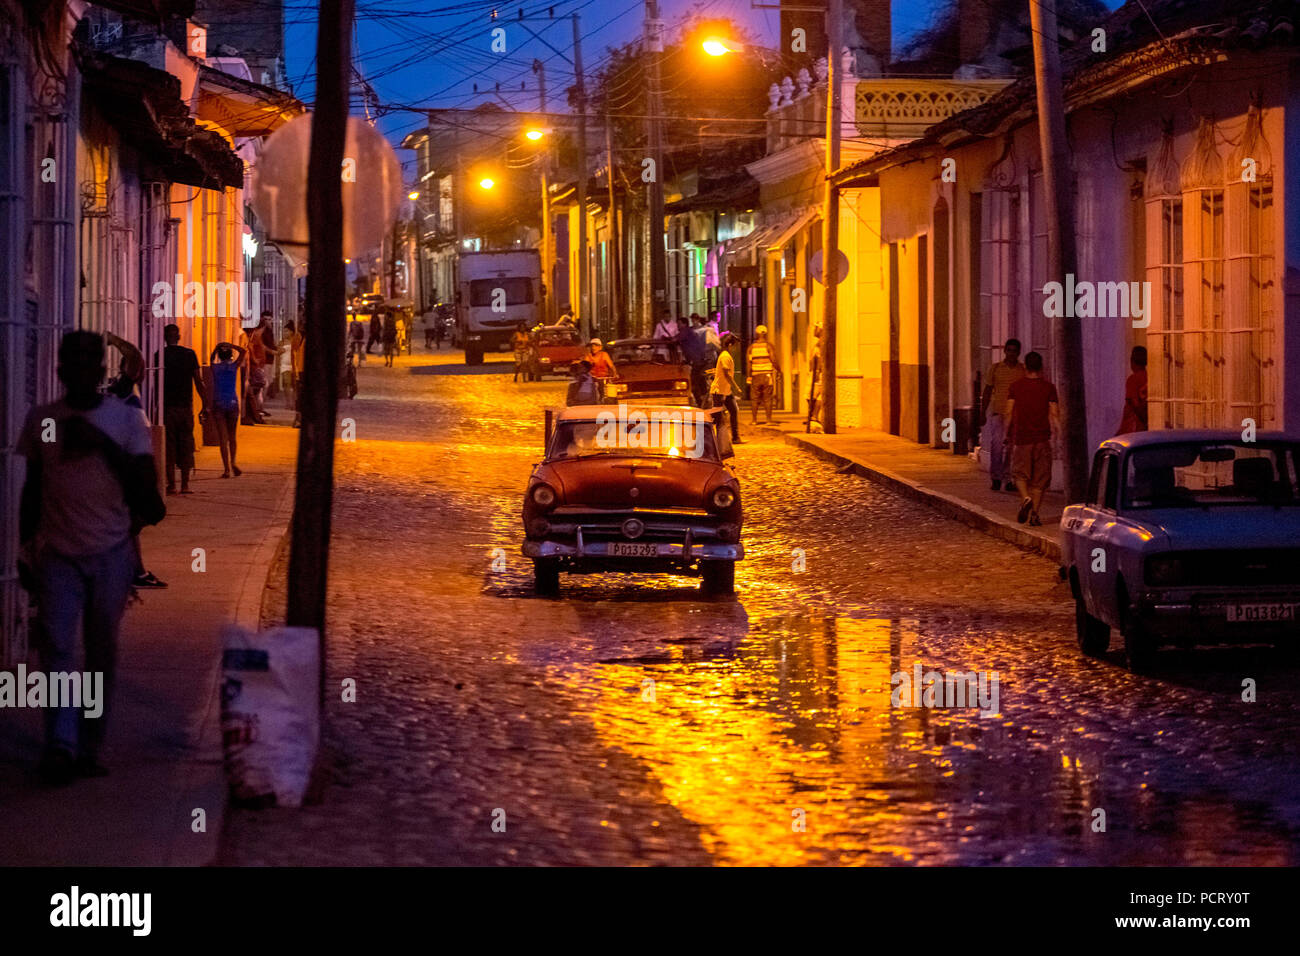 Orologio notturno scena di strada nel centro storico della città di Trinidad con auto d'epoca e lanterne, Trinidad, Cuba, Sancti Spíritus, Cuba Foto Stock